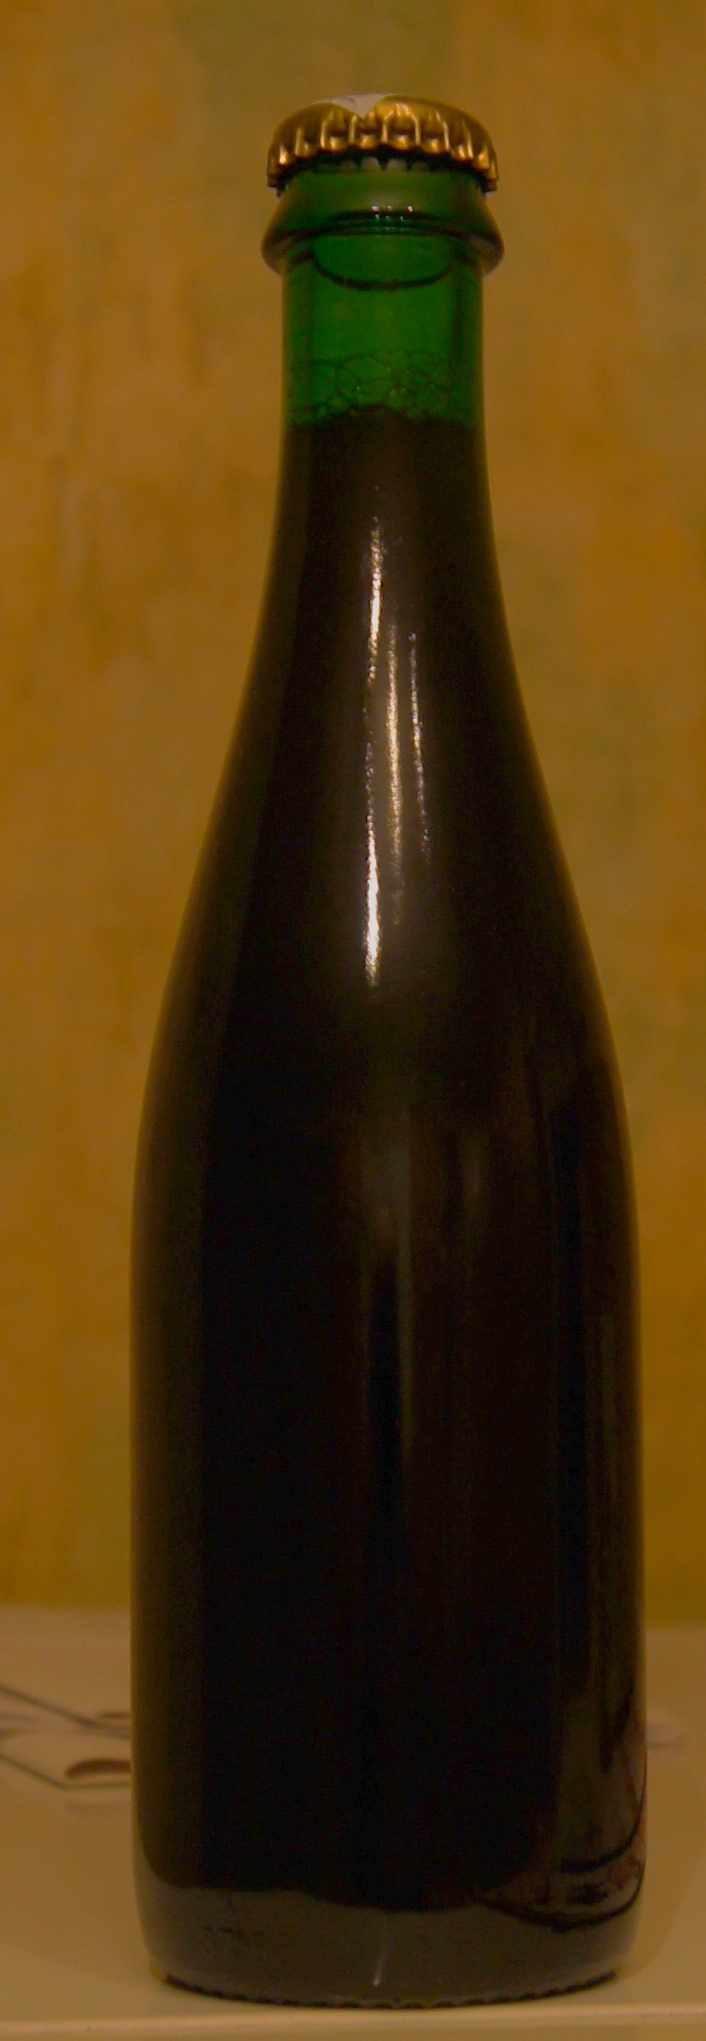  Bacchus flemish old brown. Пиво и шпроты, двойная дегустация.